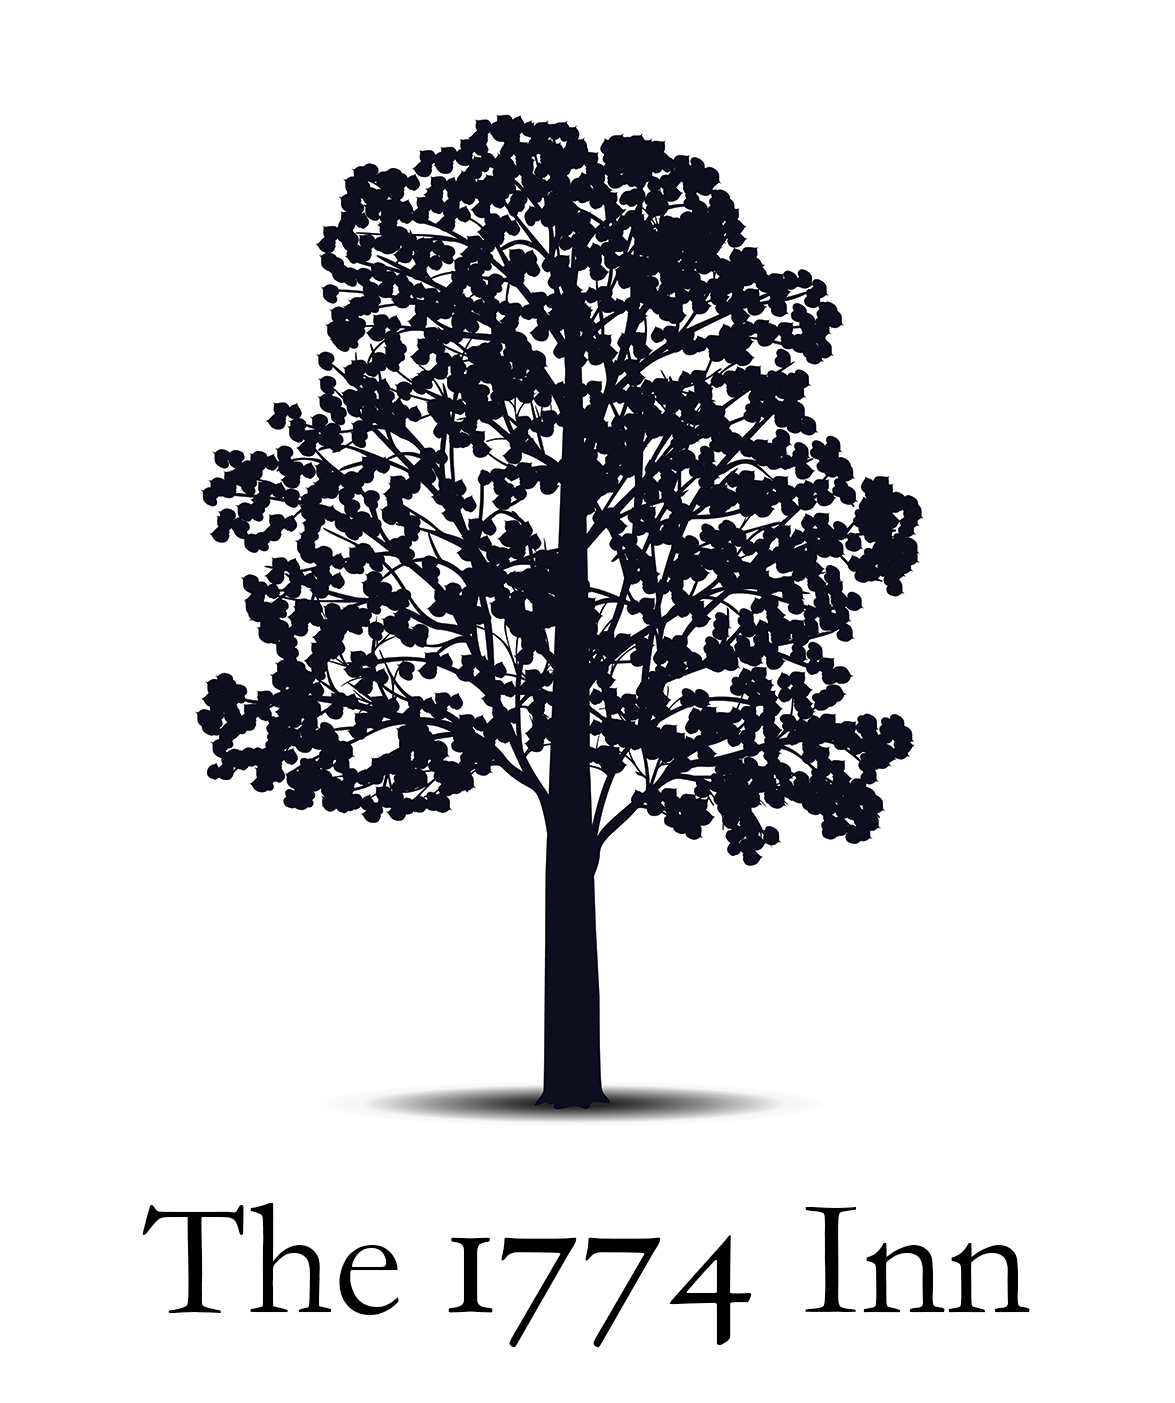 The 1774 Inn